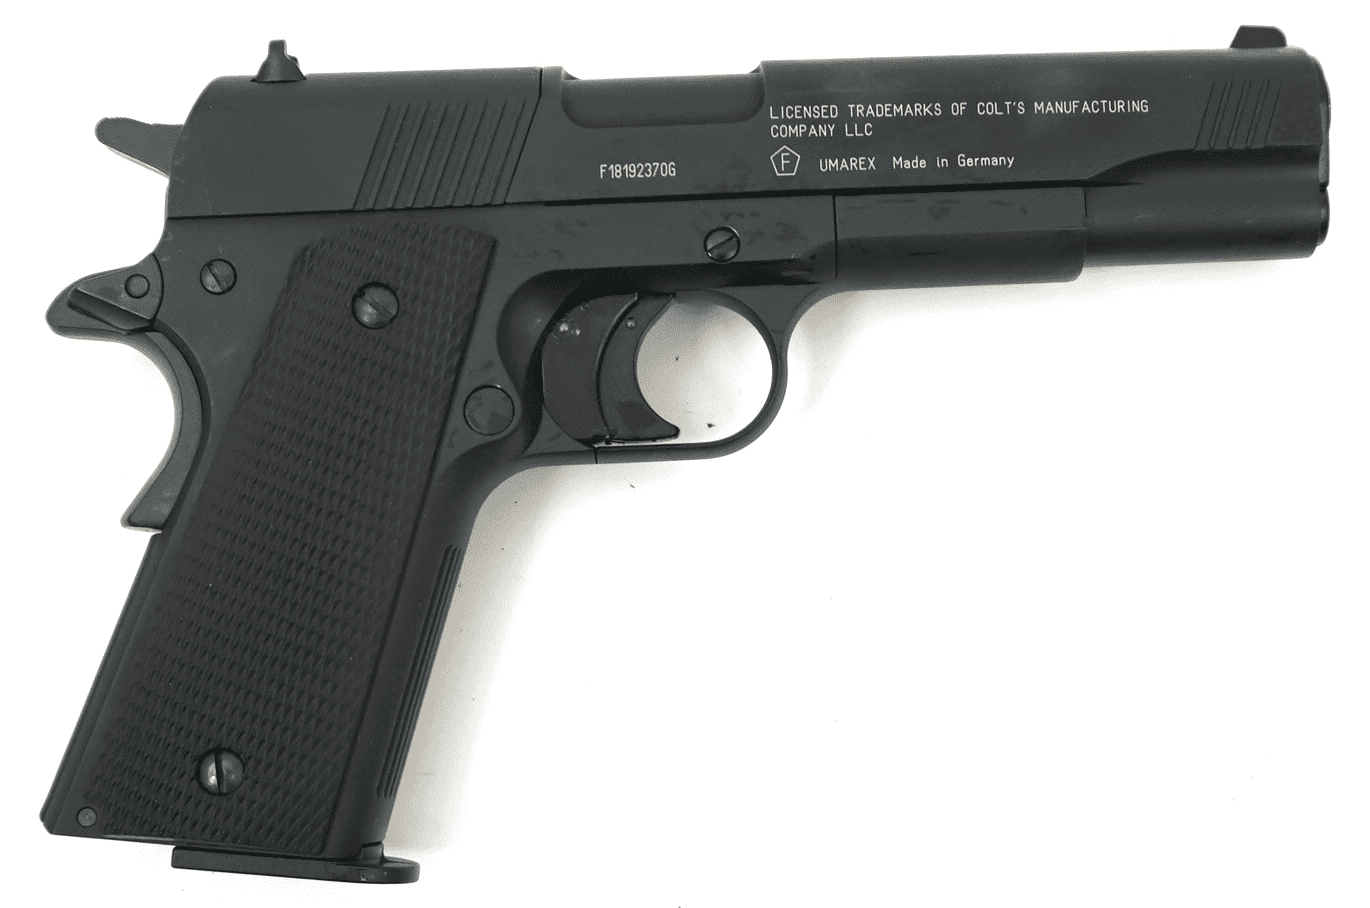 Пневматический пистолет Umarex Colt Government 1911 A1 кал.4,5мм